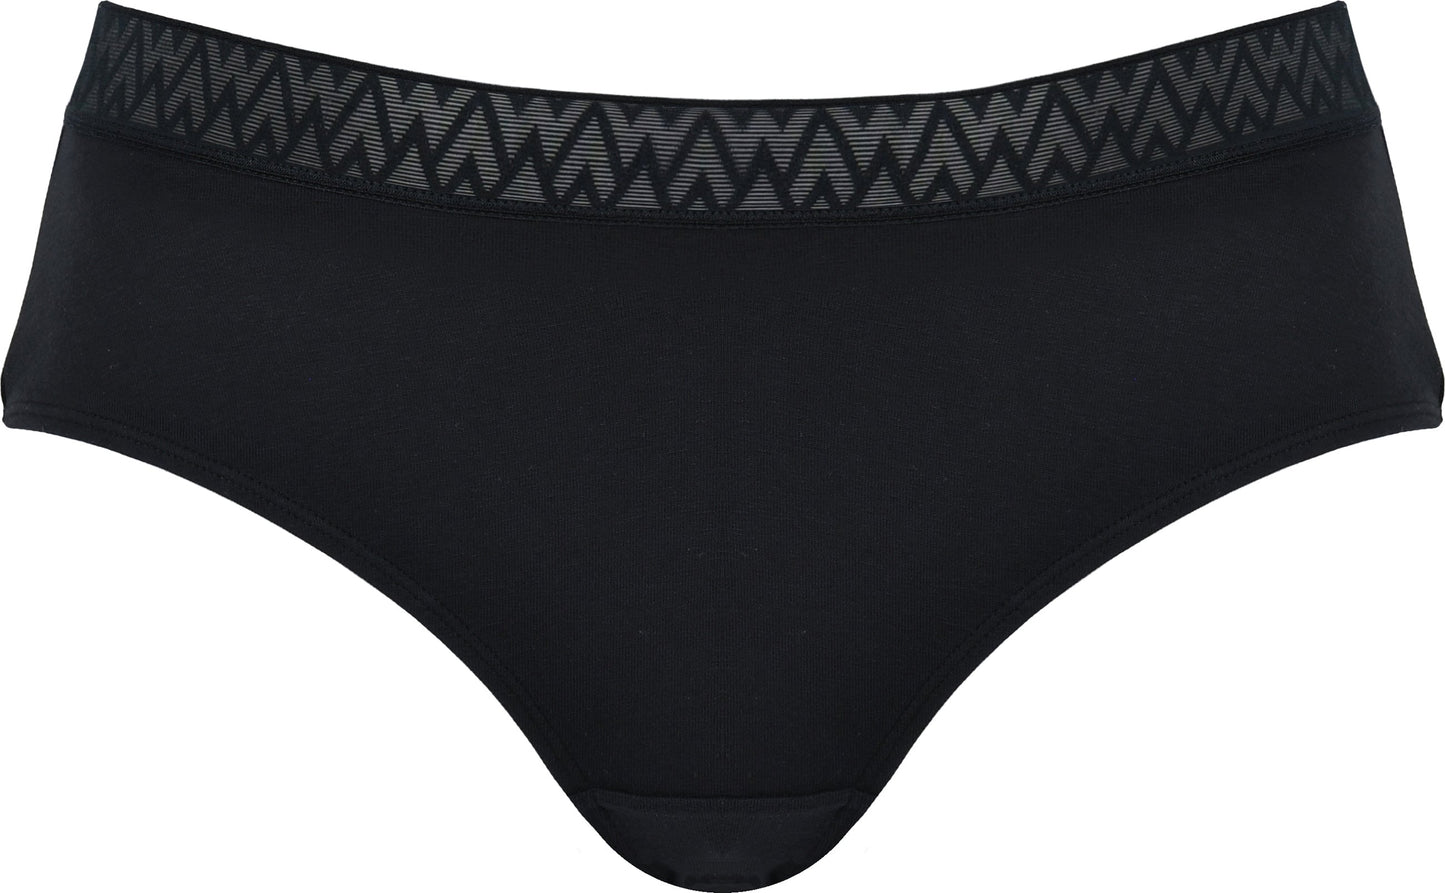 Voorzijde productafbeelding katoenen slip met kanten rand in de kleur zwart van het merk Naturana